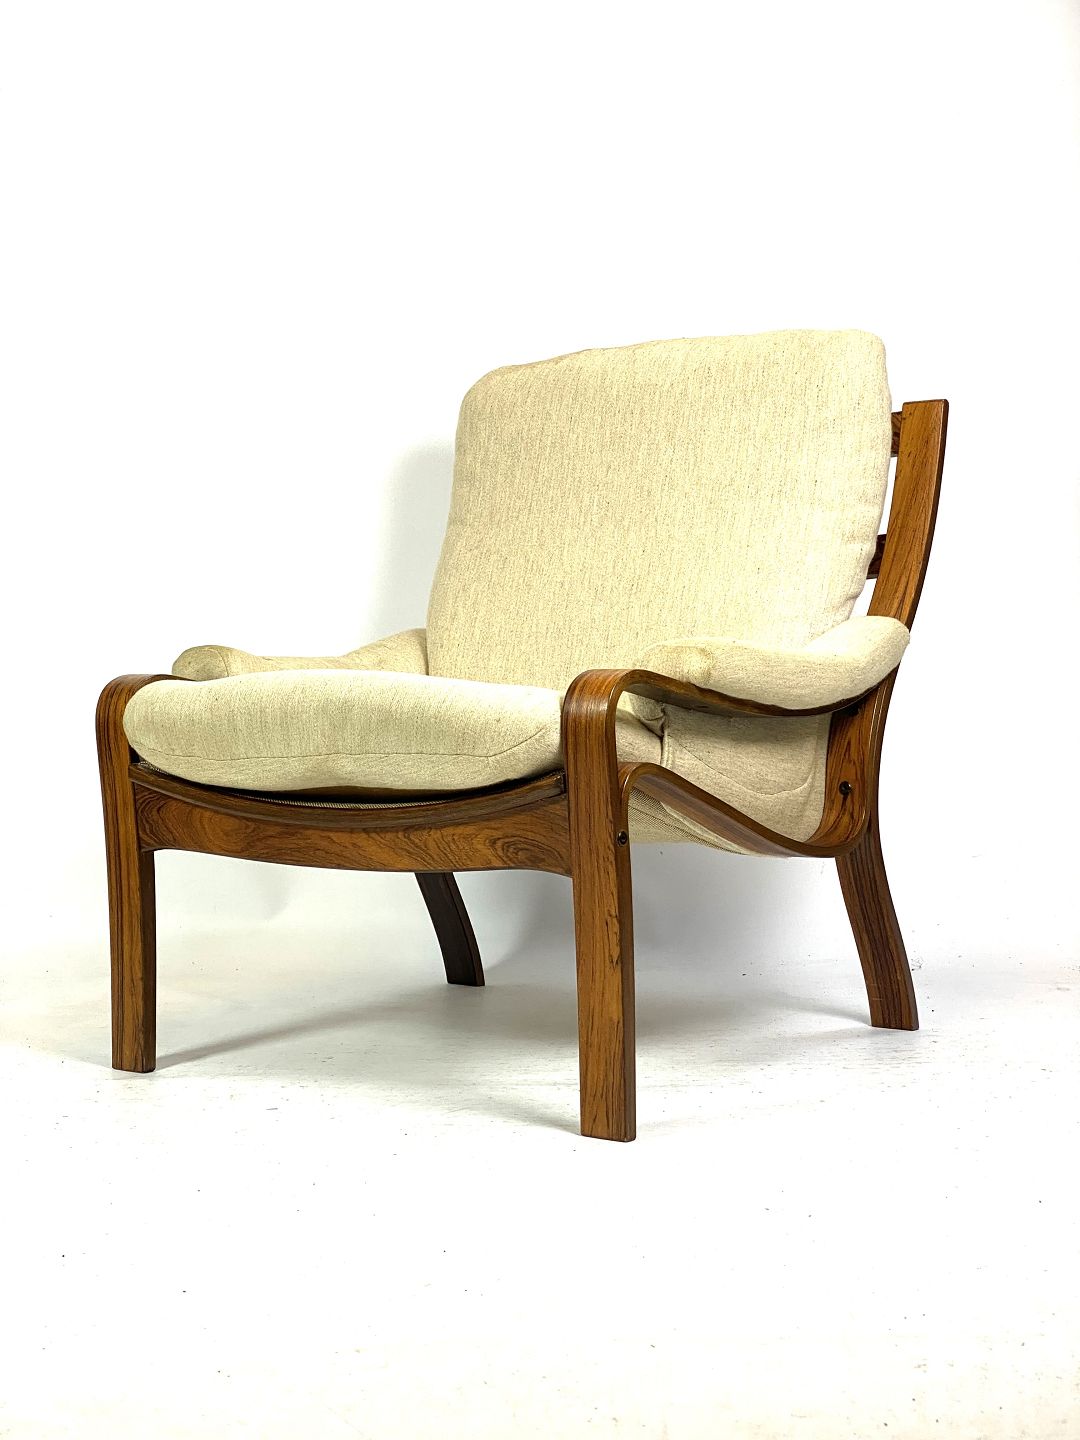 Hvilestol i palisander og polstret med lyst stof, dansk design fra 1960erne. - Osted Antik Design